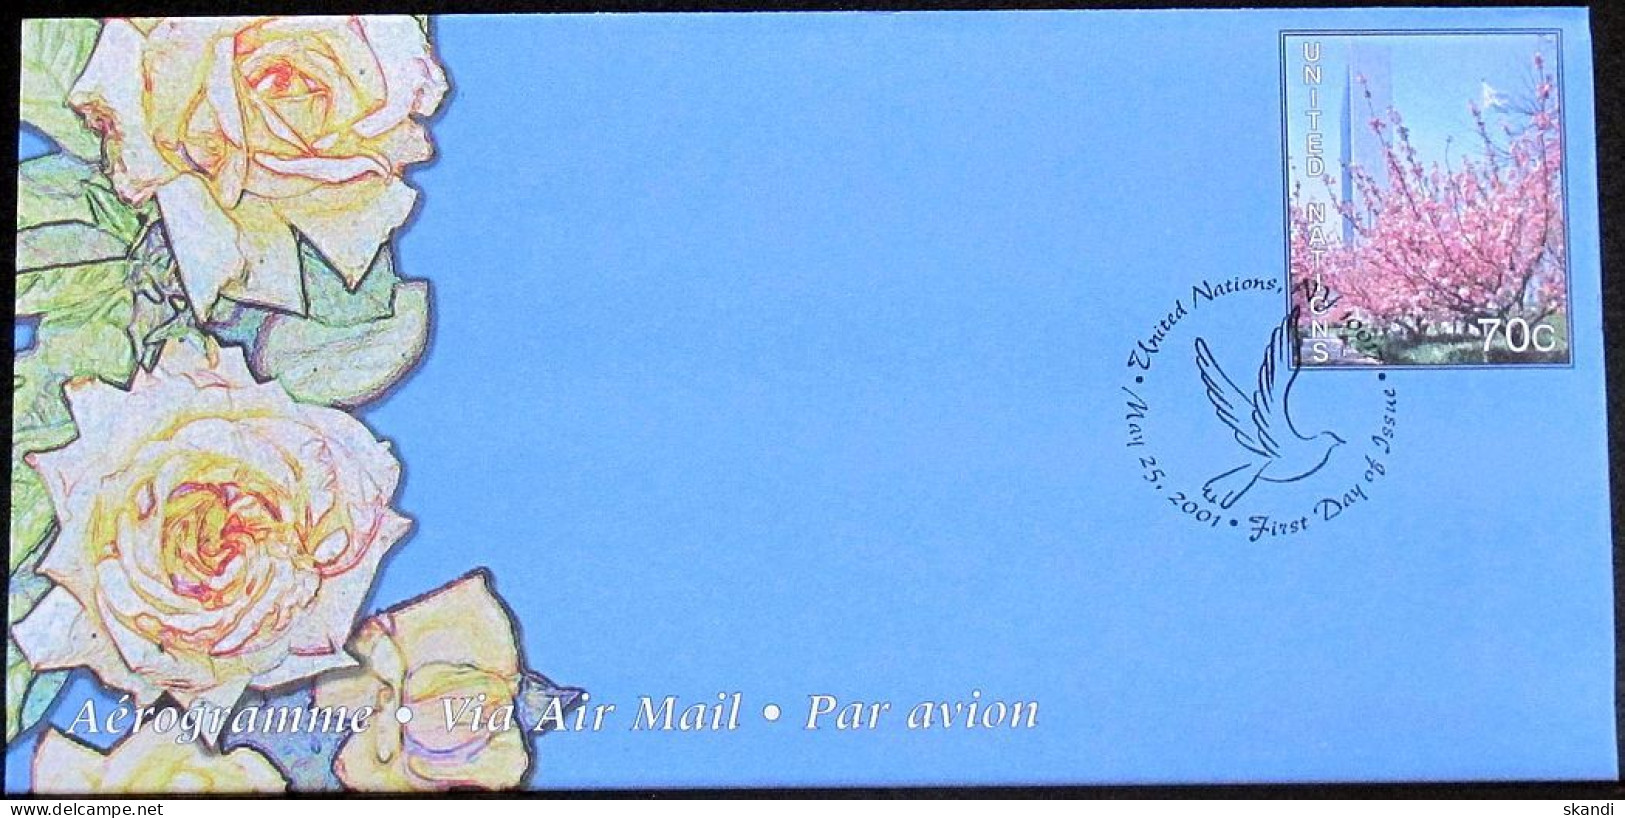 UNO NEW YORK 2001 Mi-Nr. LF 18 Ganzsache Luftpostfaltbrief Gestempelt EST - Airmail